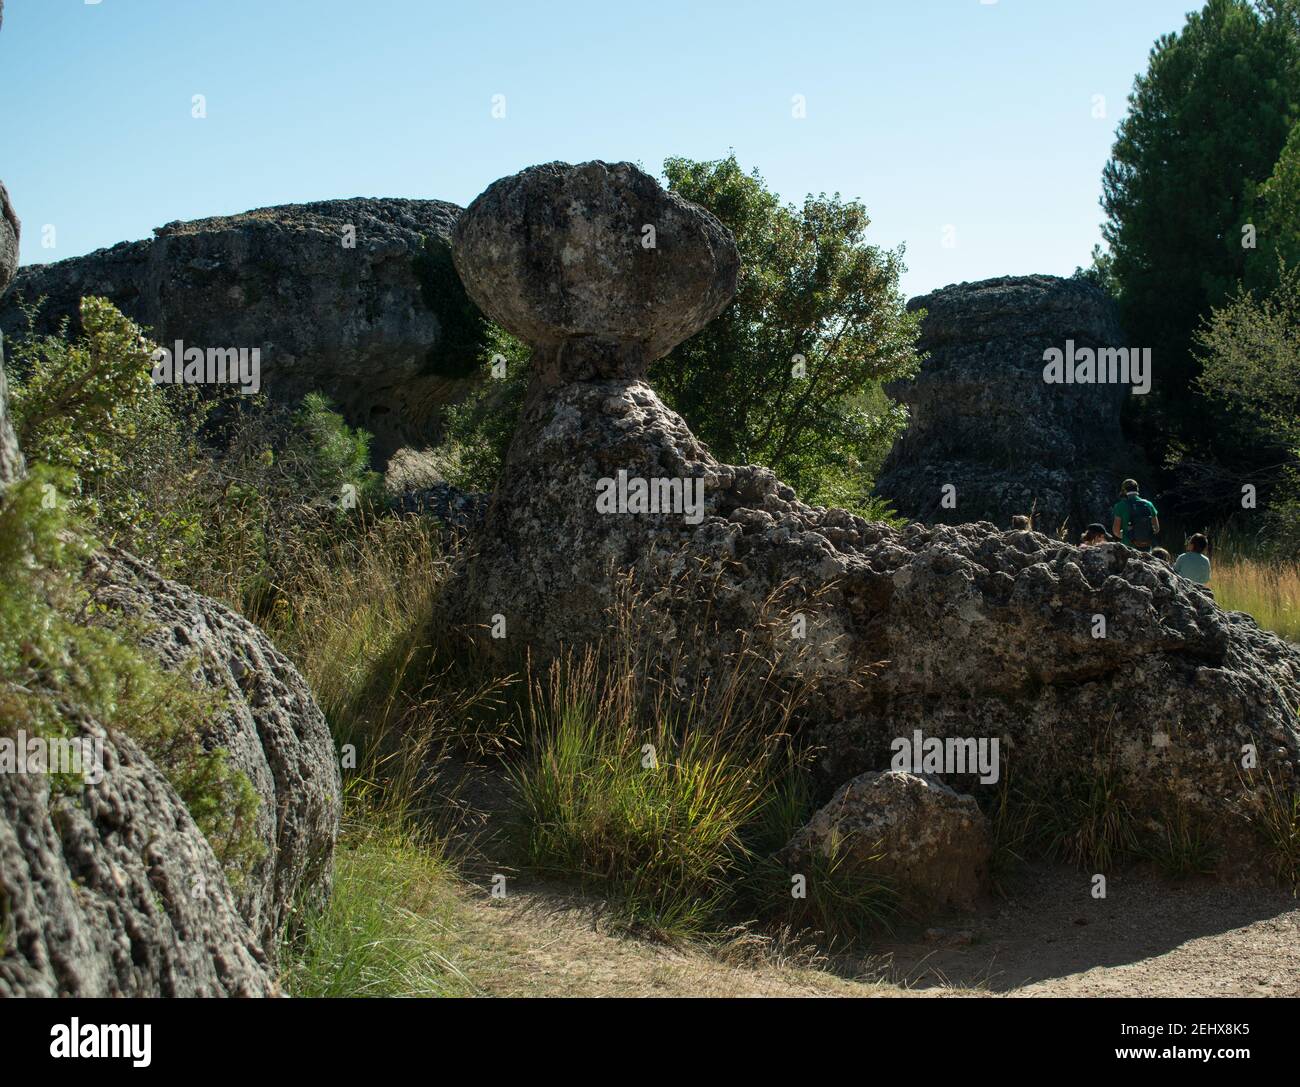 città incantata di cuenca, spagna con immagini scolpite in pietra nel mezzo della serrania de cuenca Foto Stock